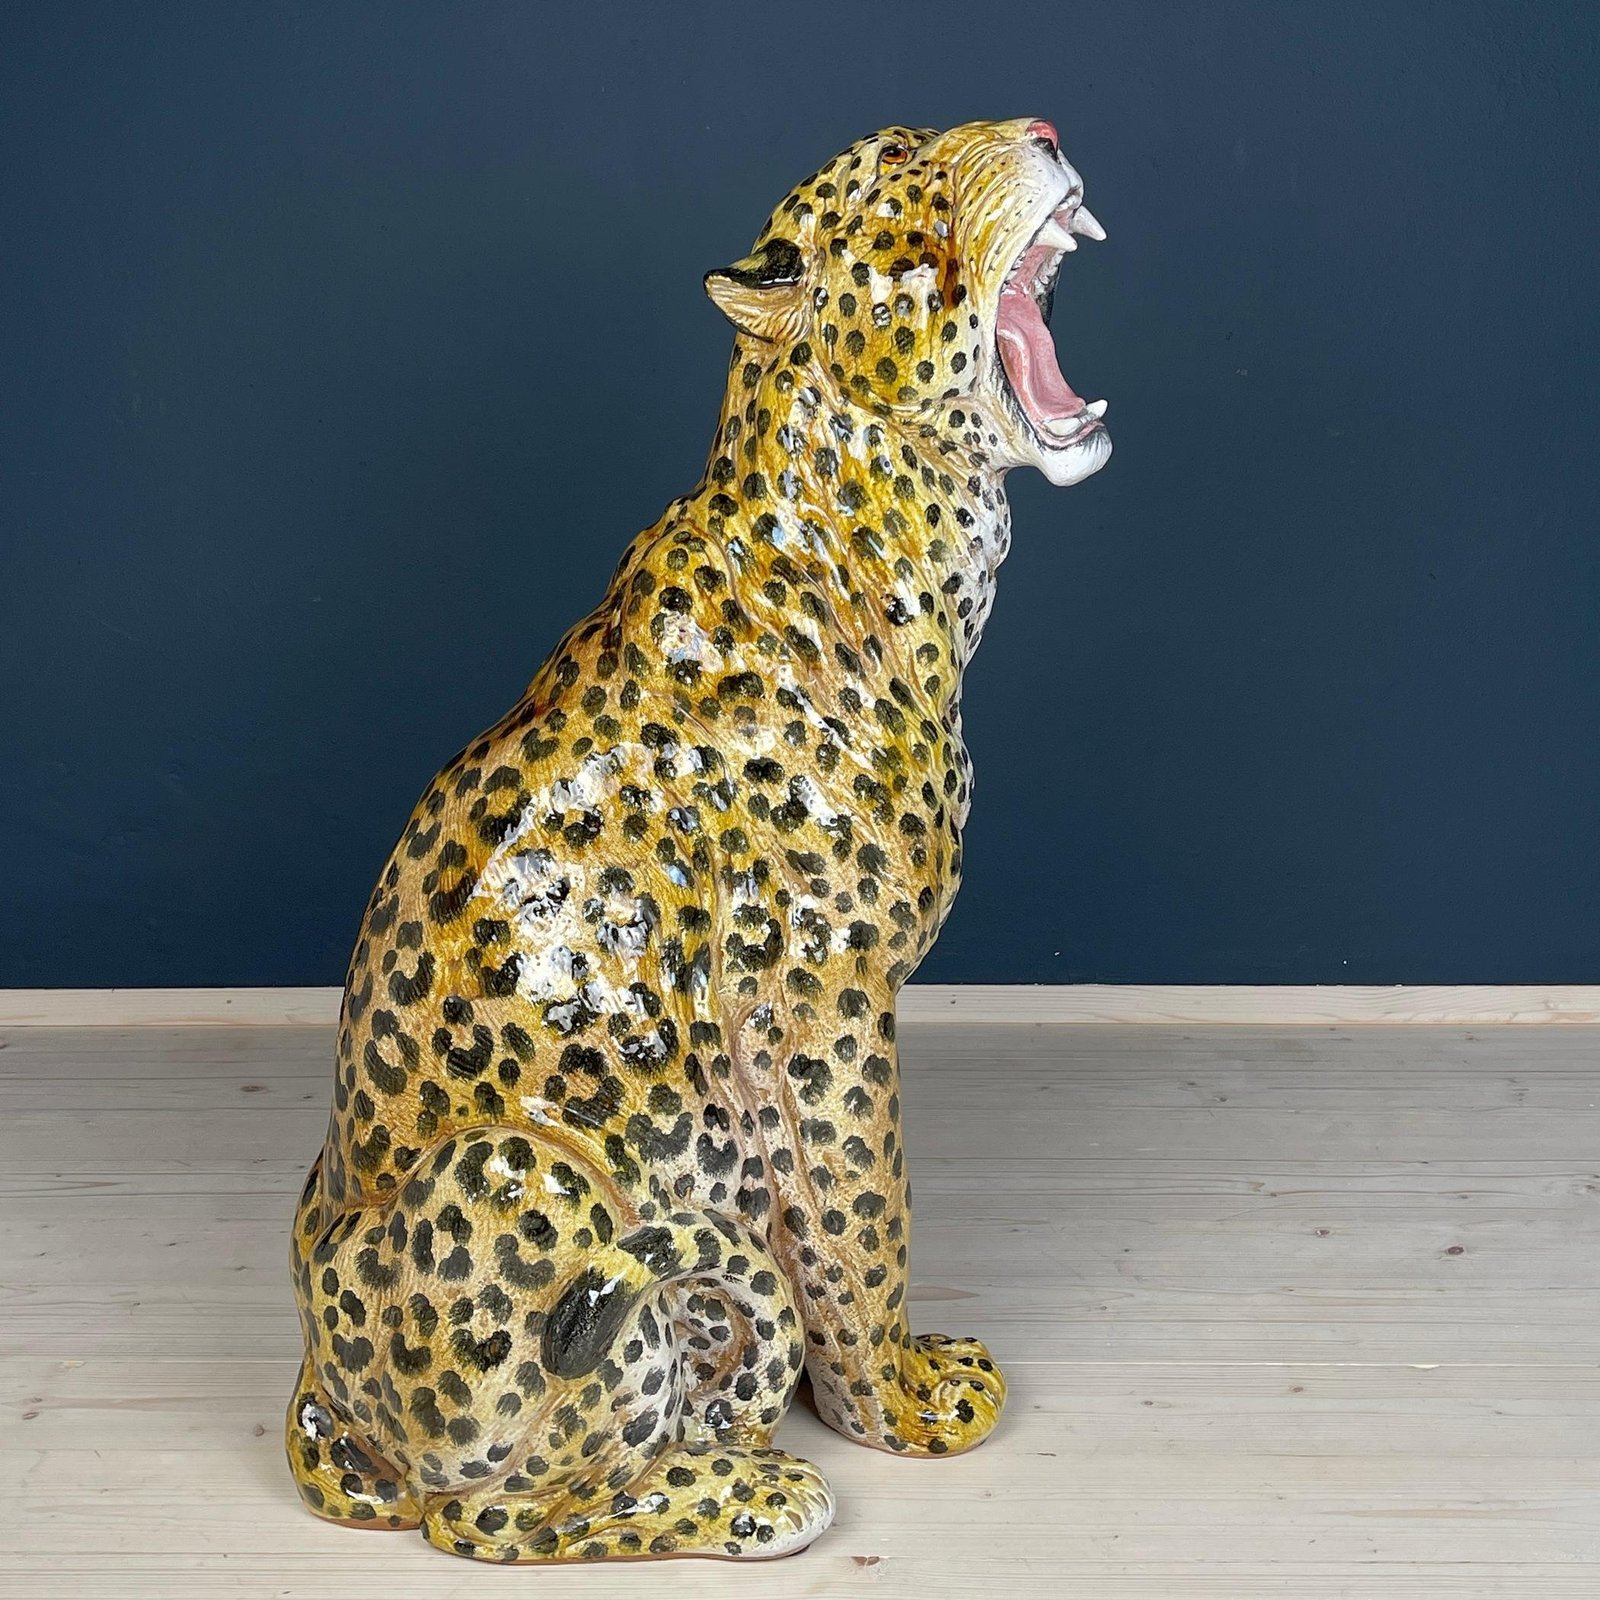 Large ceramic sculpture of Leopard Italy 1960s Vintage handpainted decor Italian terracotta florentine ceramic